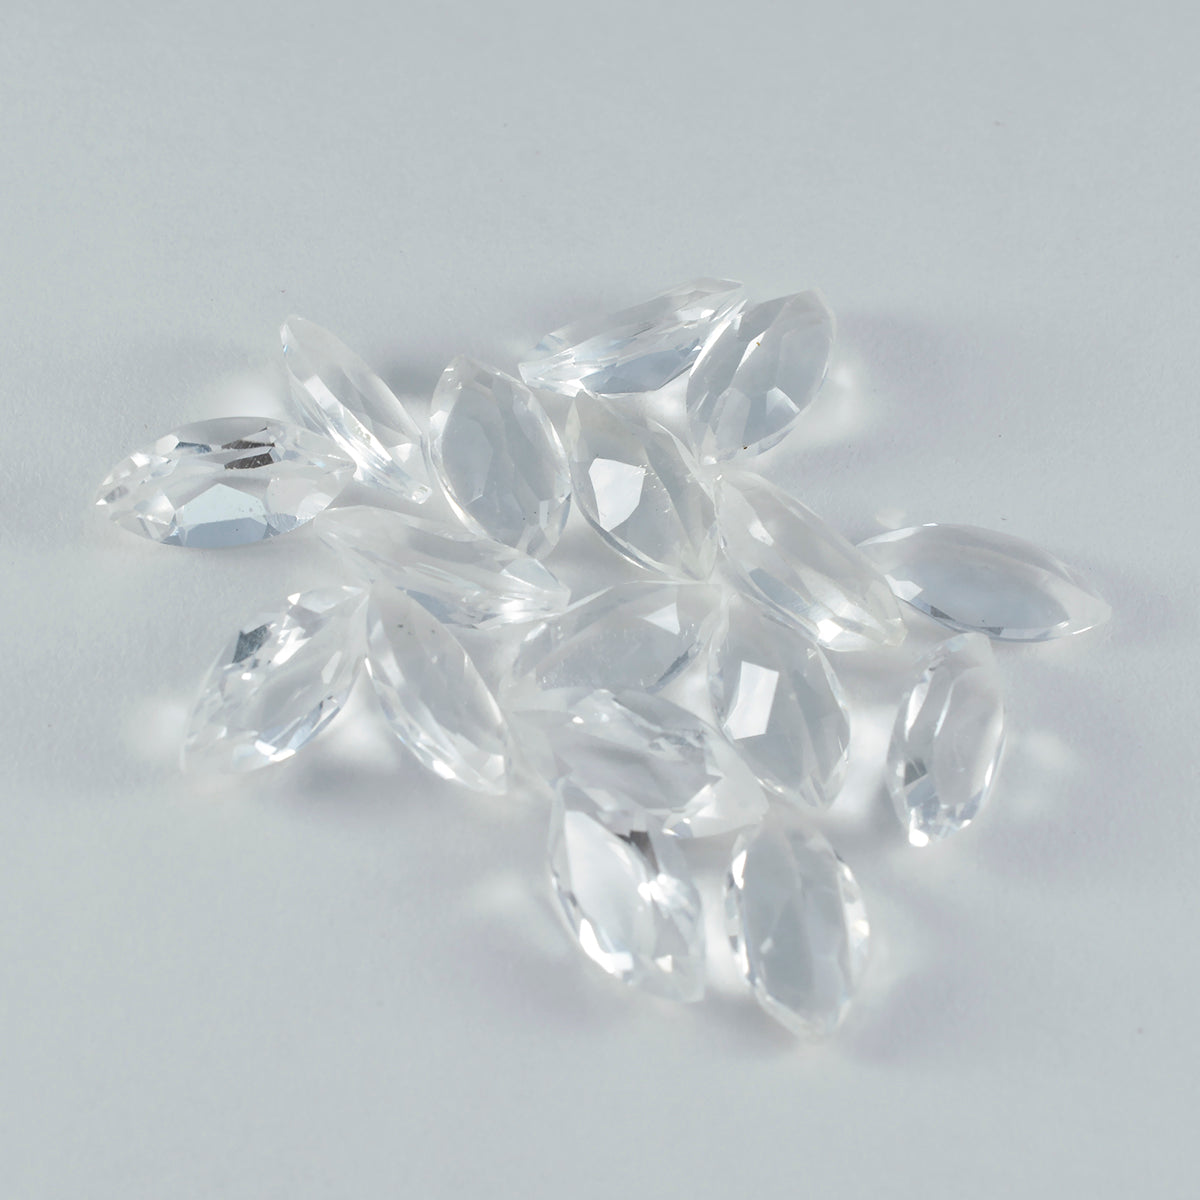 Riyogems 1 pieza de cuarzo de cristal blanco facetado de 8x16 mm con forma de marquesa, piedra preciosa de calidad A1